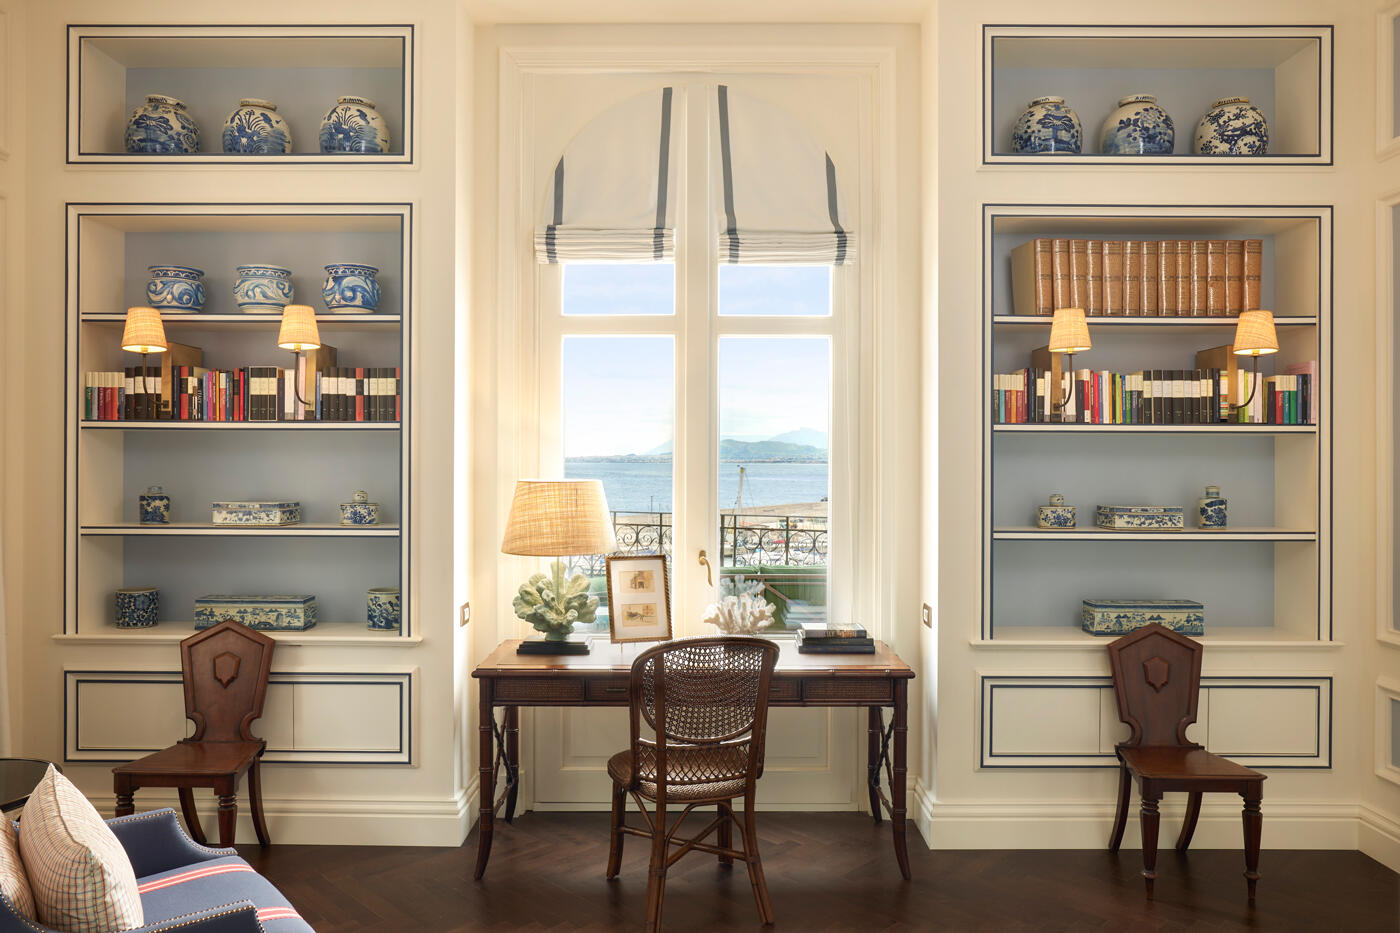 Blick auf eine Wand mit zwei Einbauregalen jeweils auf einer Seite. In der Mitte sieht man ein Fenster mit Meerblick. Davor steht ein kleiner Tisch mit Stuhl und Lampe.